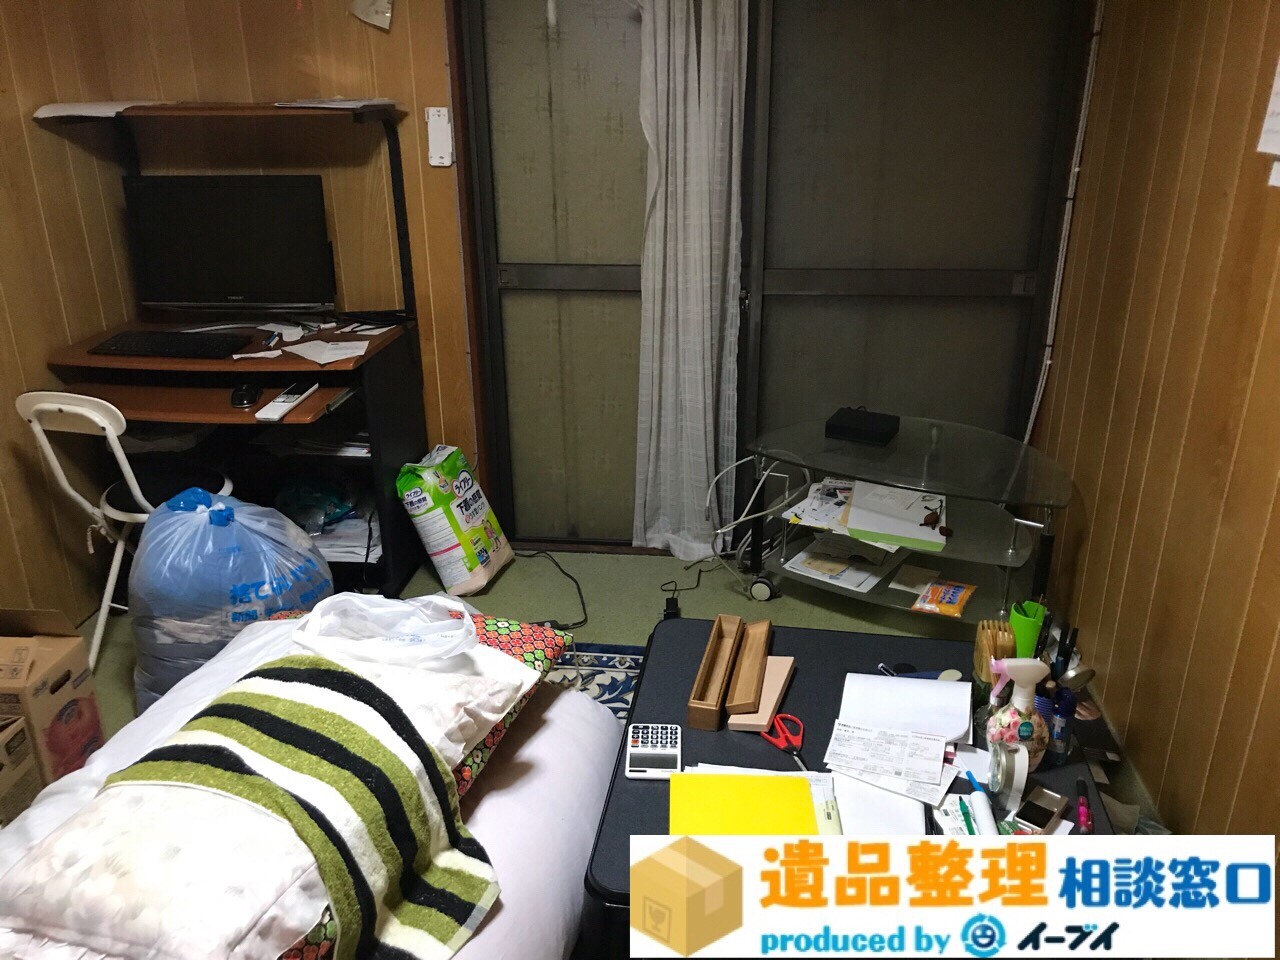 兵庫県三田市で遺品整理に伴う家財道具処分をしました。のアイキャッチ